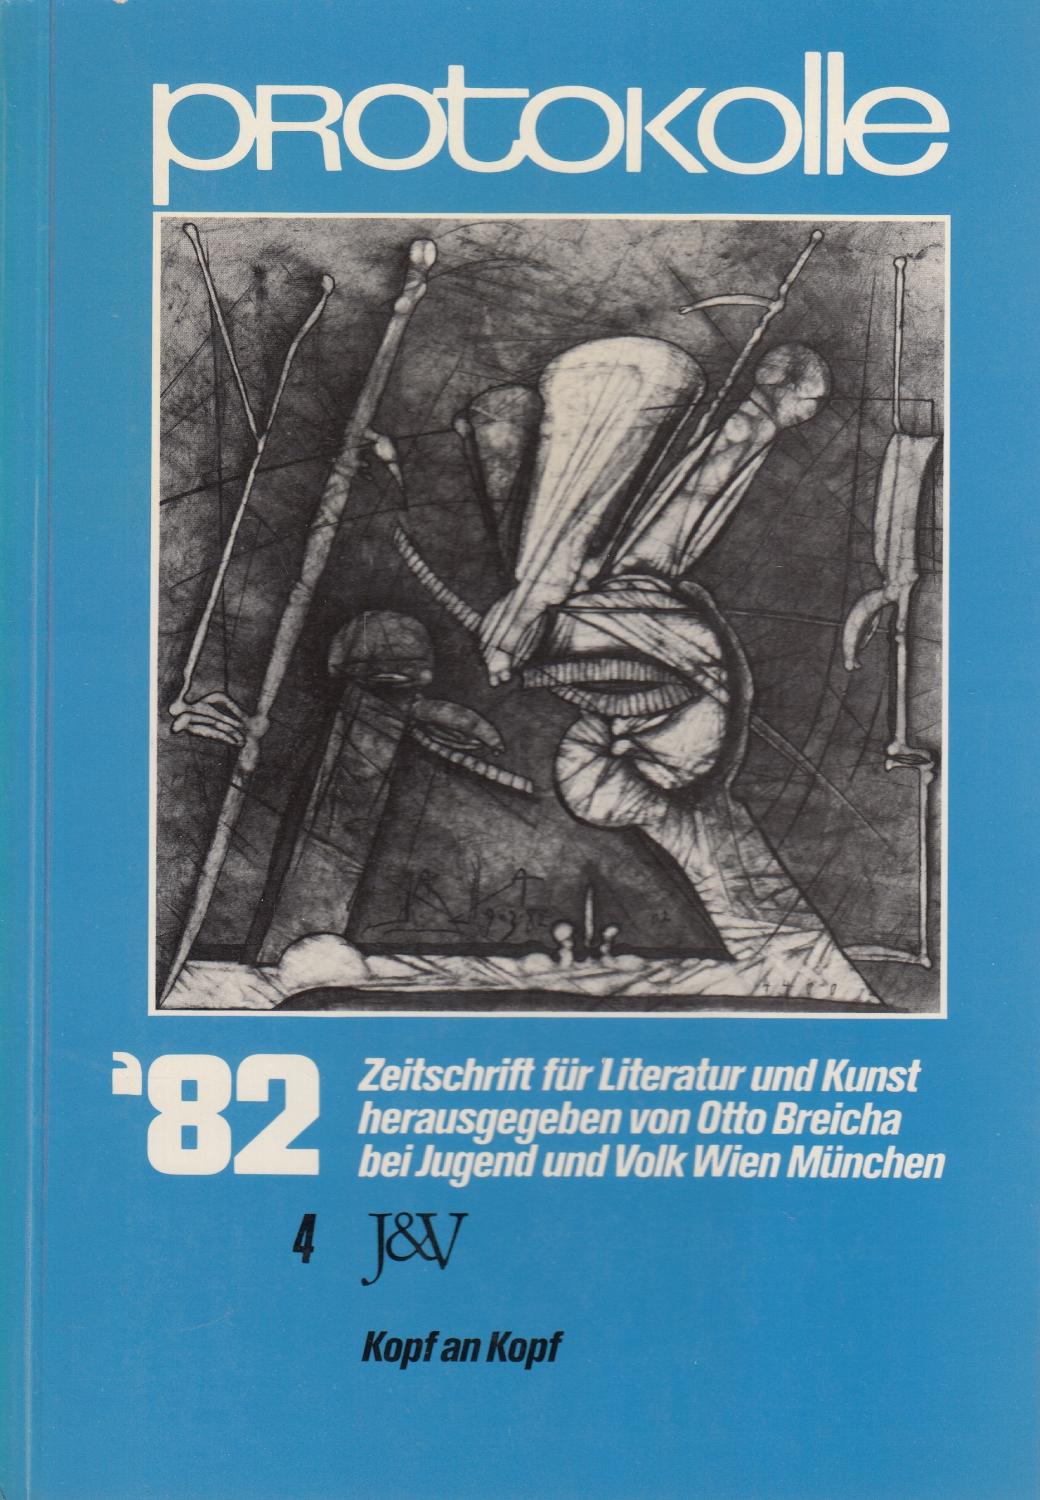 Protokolle. Zeitschrift Fuer Literatur Und Kunst. Band 4 / Jahrgang 1982. Kopf An Kopf